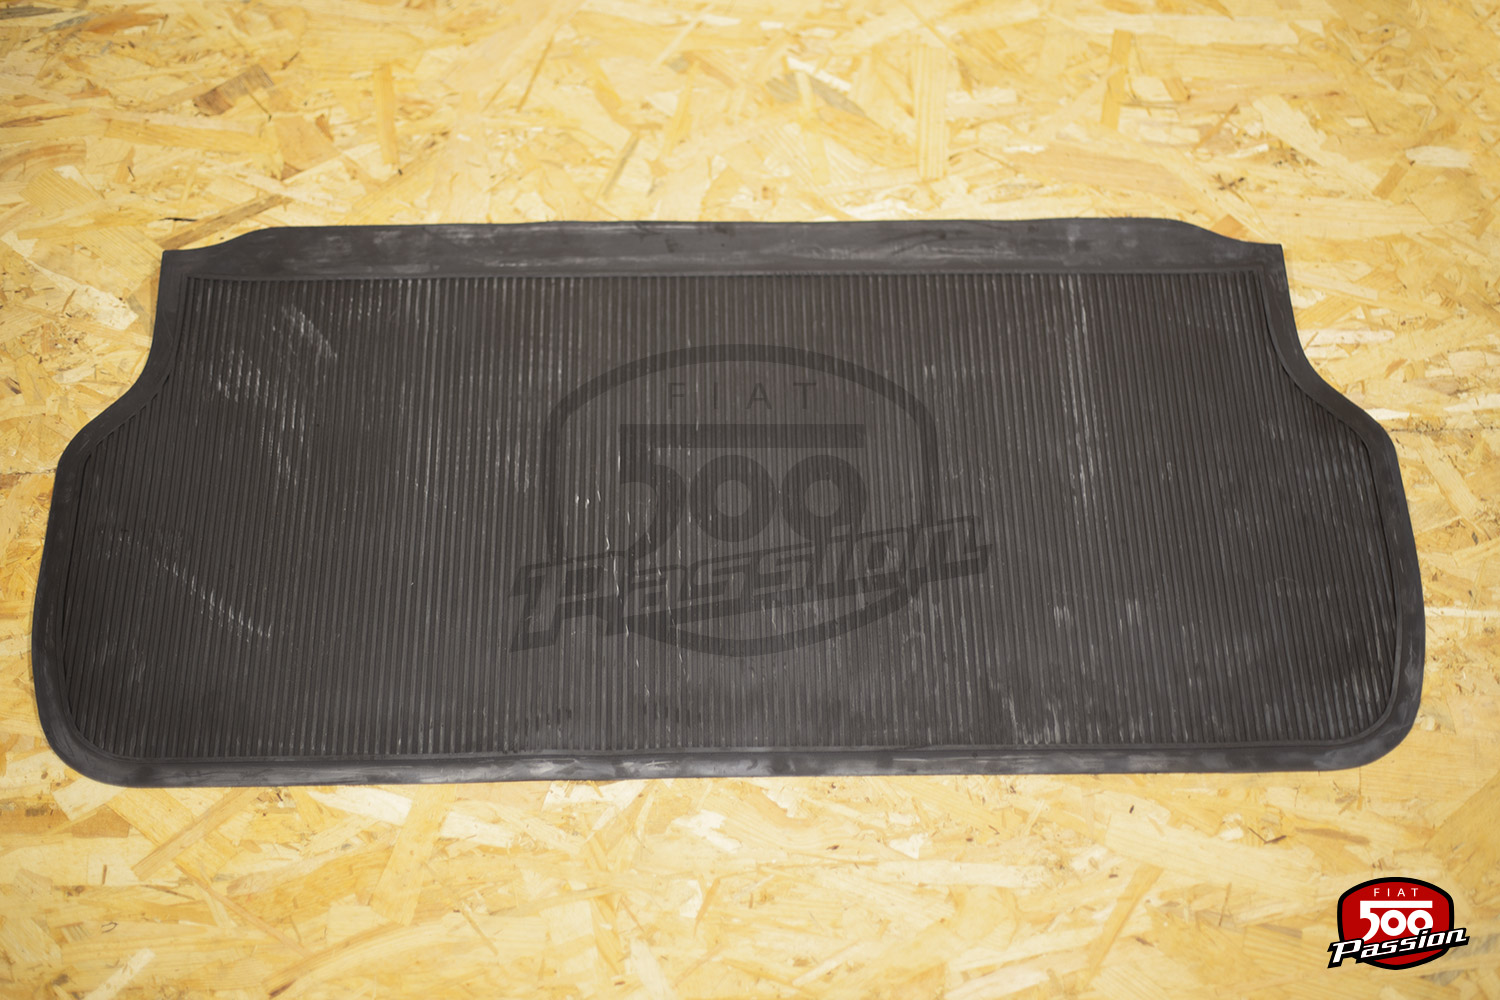 Tapis de sol caoutchouc complet pour 500 F / R - Fiat 500 Passion